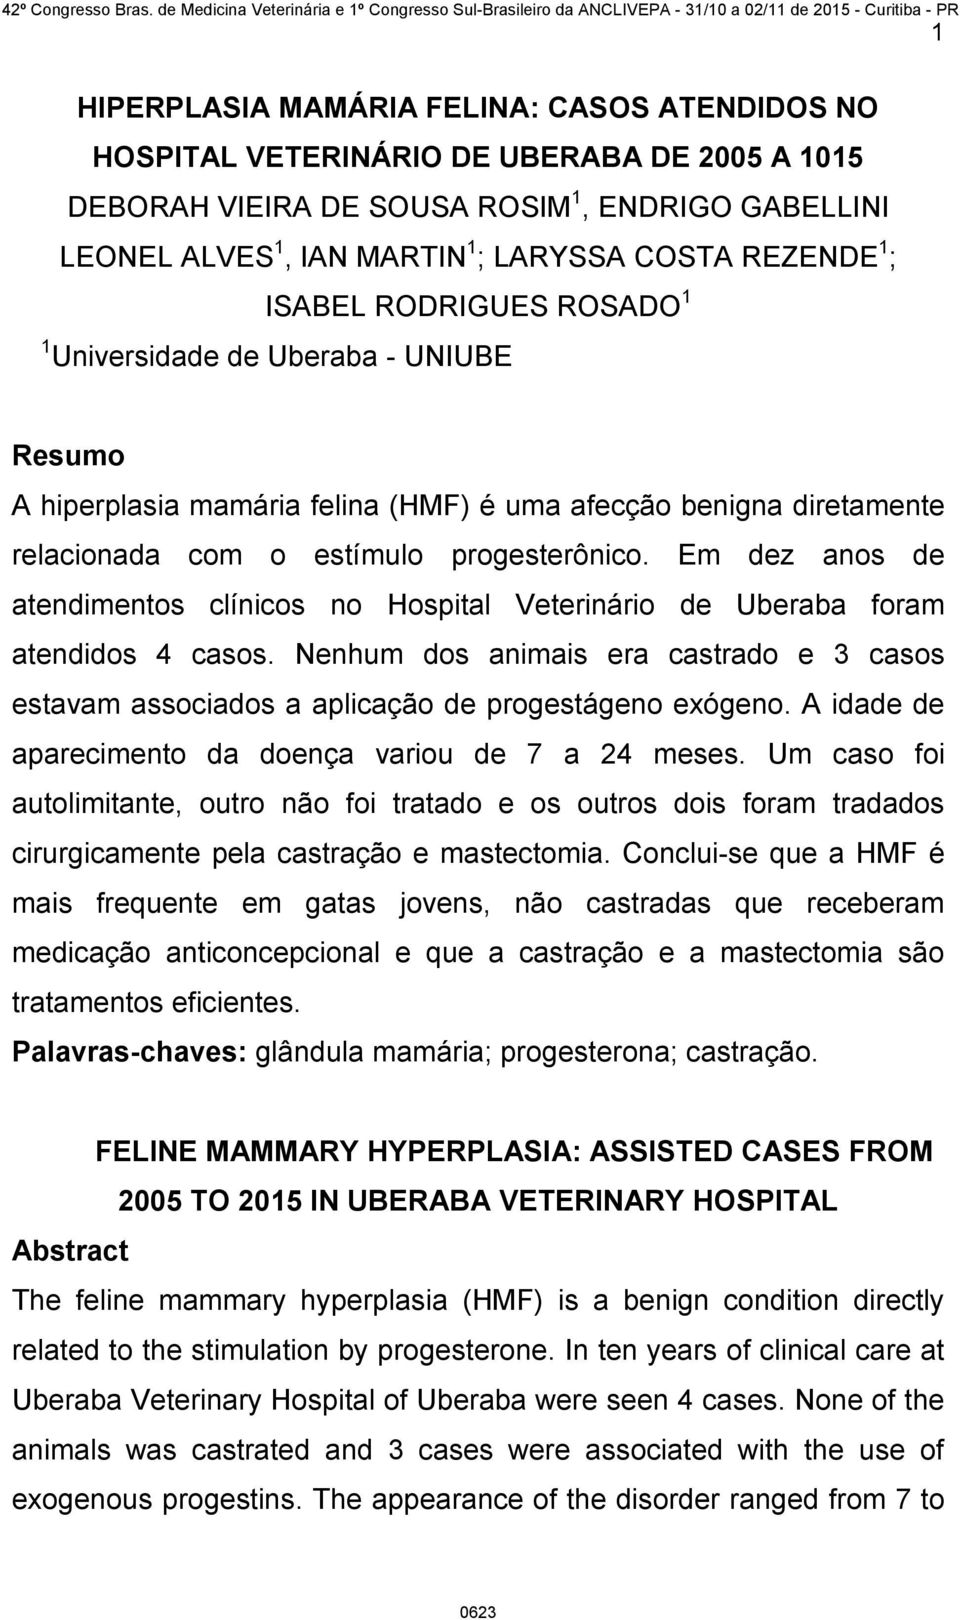 Em dez anos de atendimentos clínicos no Hospital Veterinário de Uberaba foram atendidos 4 casos. Nenhum dos animais era castrado e 3 casos estavam associados a aplicação de progestágeno exógeno.